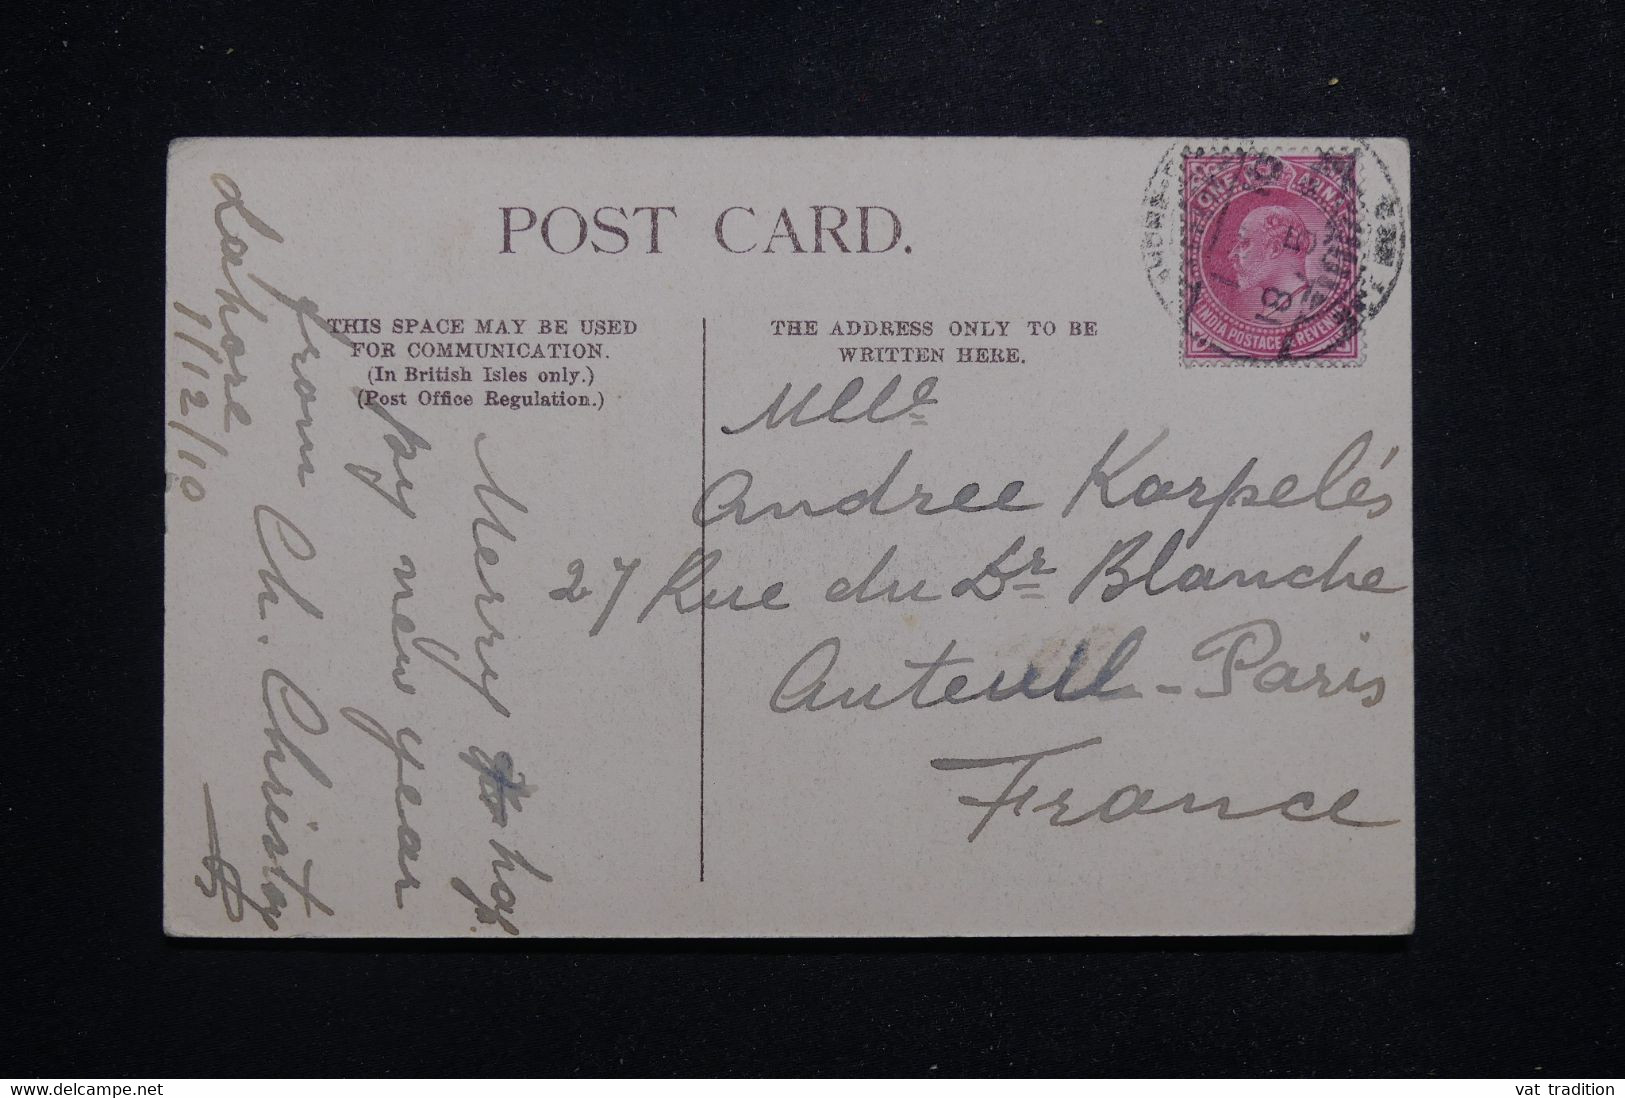 INDES ANGLAISES - Affranchissement De Lahore Sur Carte Postale En 1910 Pour La France - L 97416 - 1902-11 Roi Edouard VII